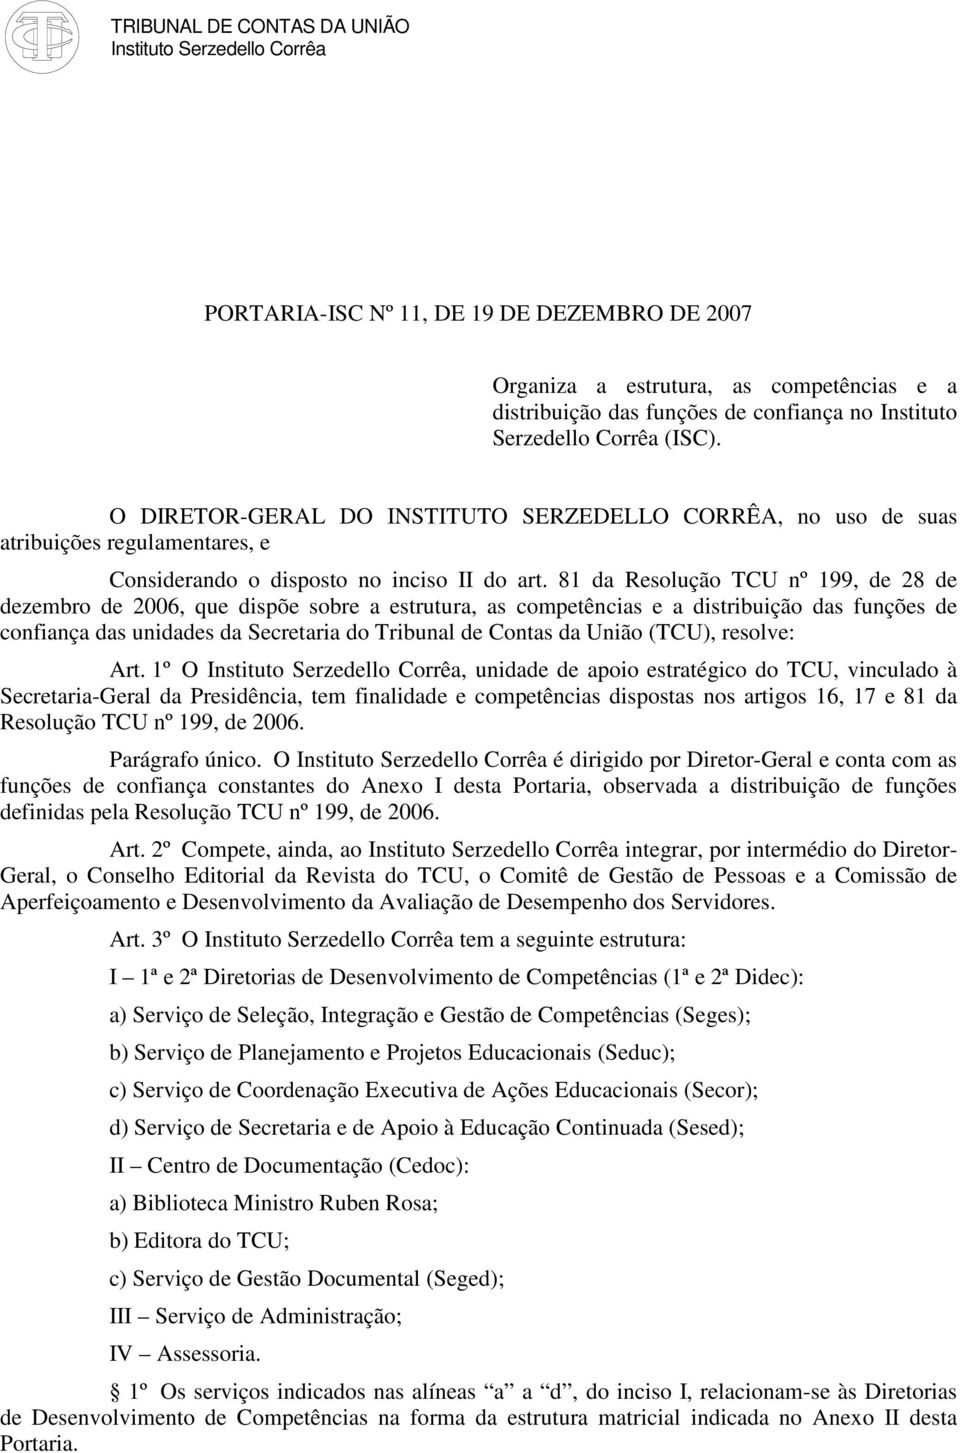 81 da Resolução TCU nº 199, de 28 de dezembro de 2006, que dispõe sobre a estrutura, as competências e a distribuição das funções de confiança das unidades da Secretaria do Tribunal de Contas da